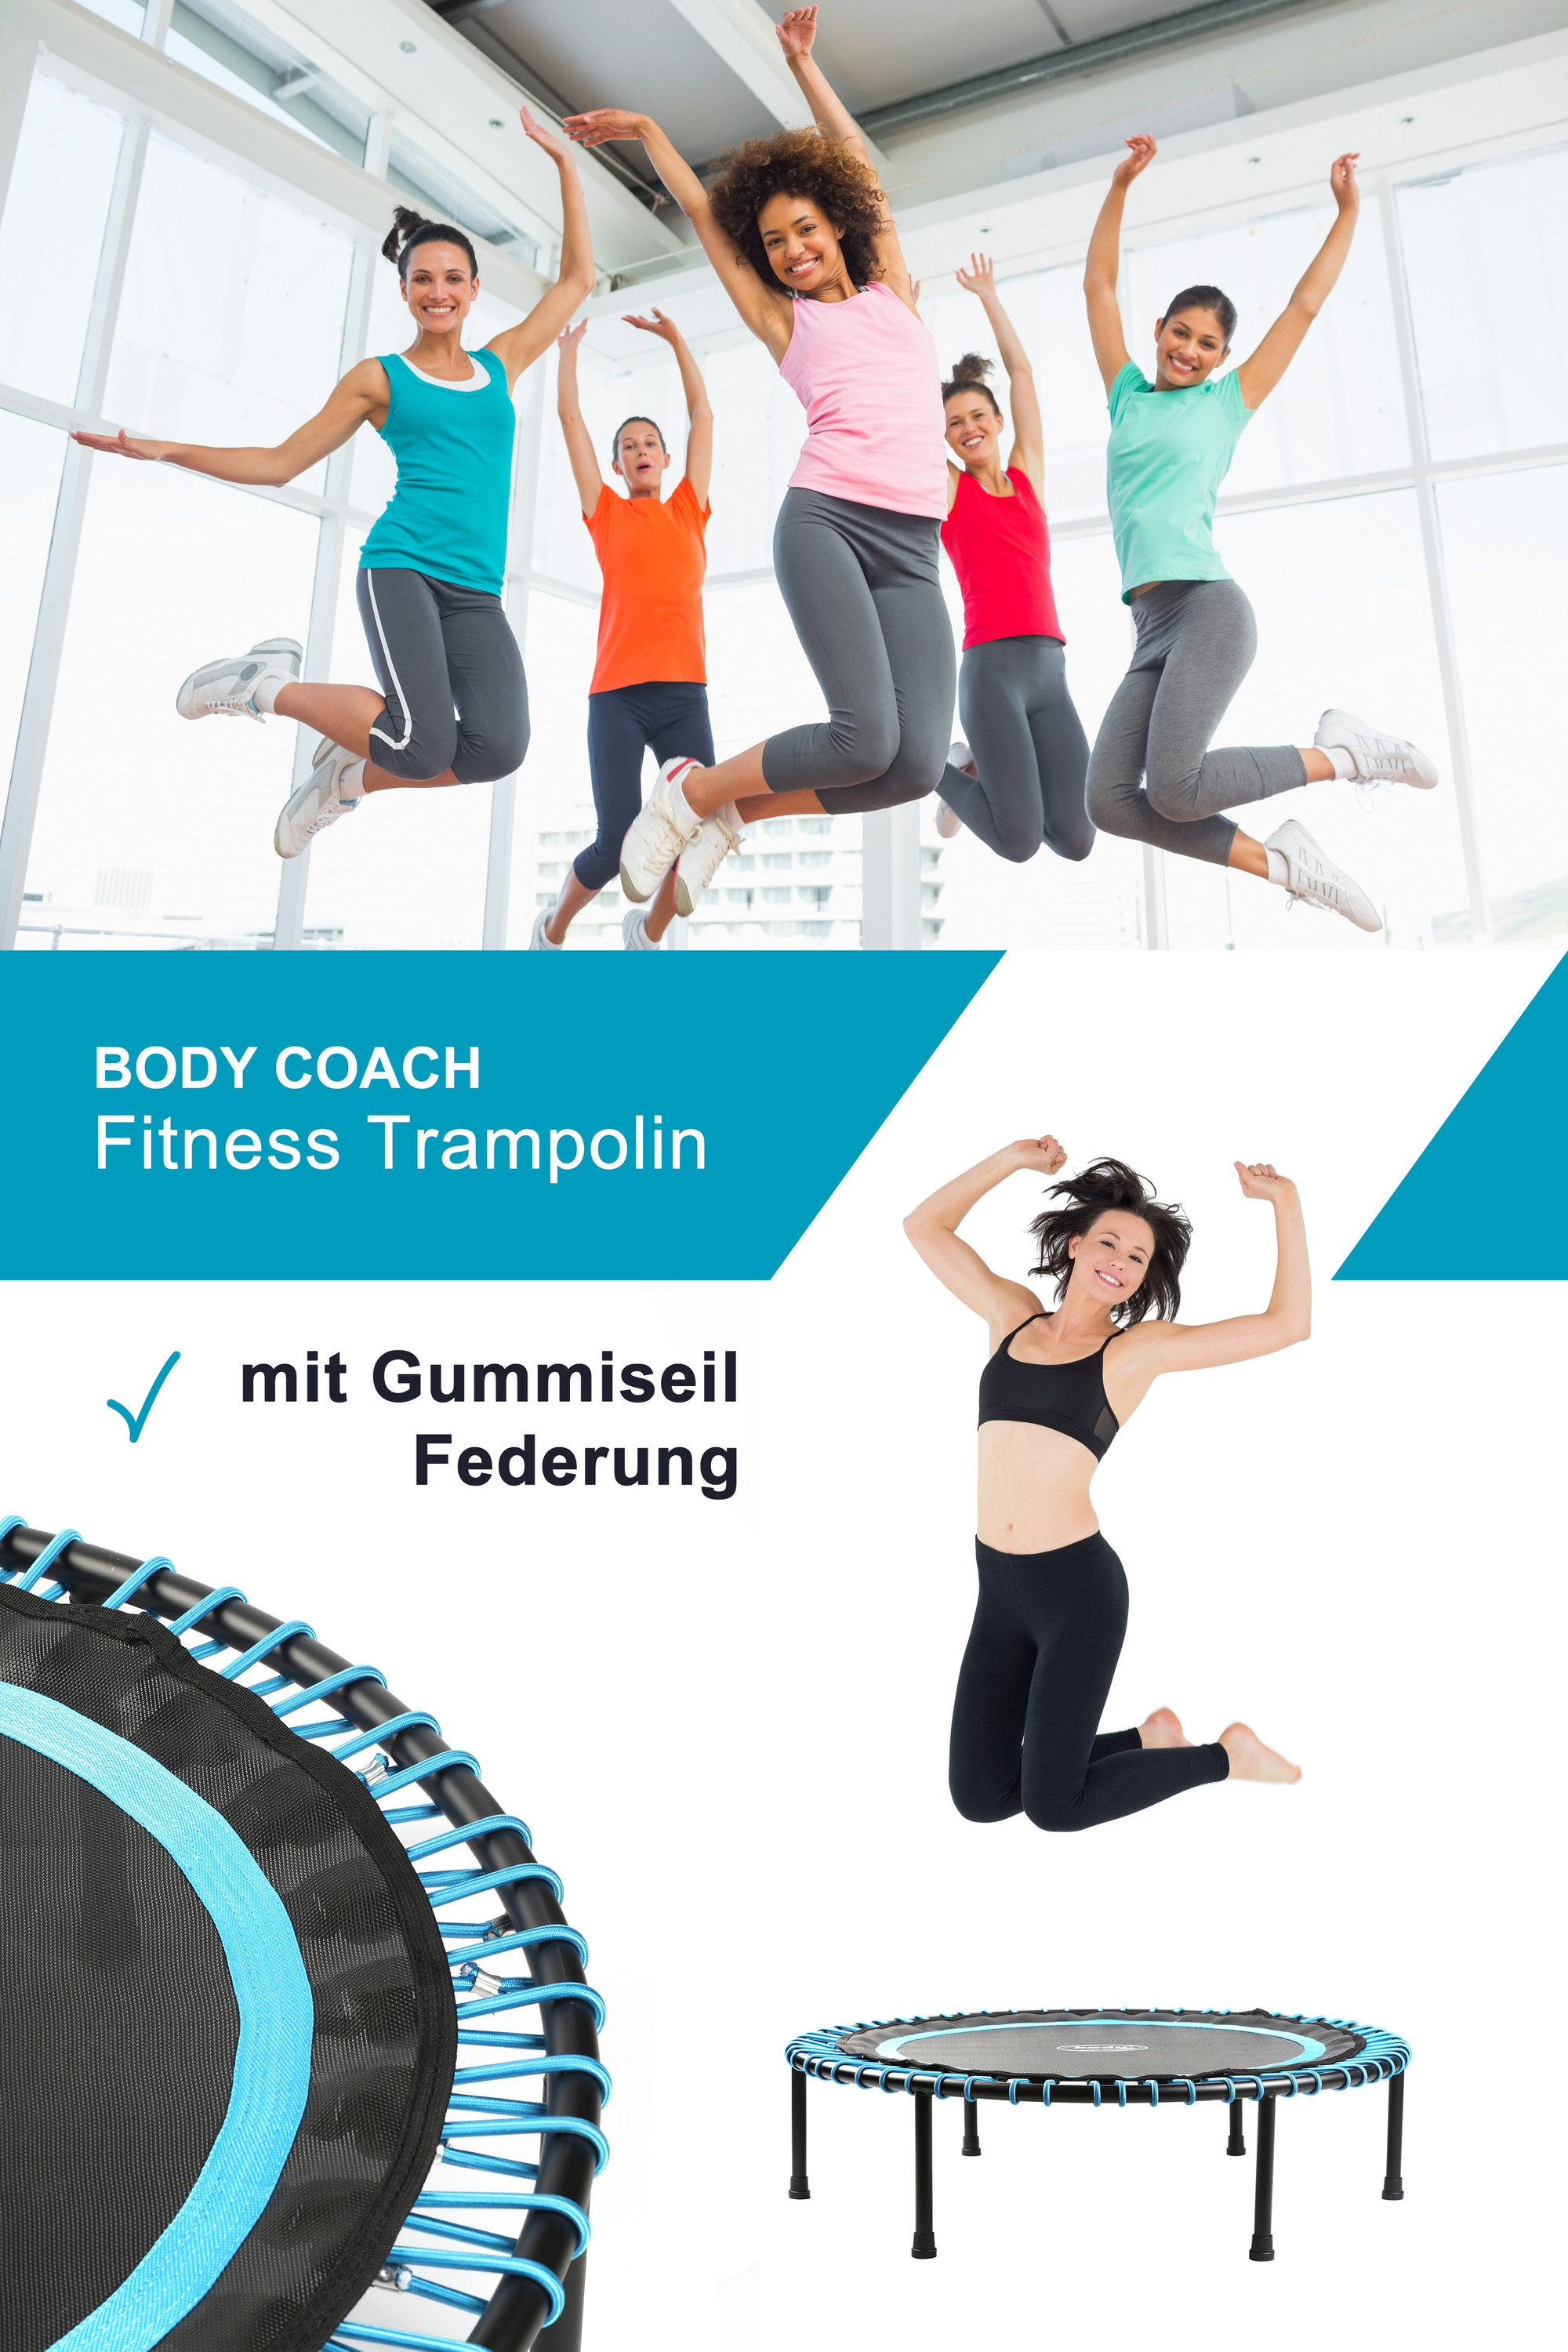 102cm Fitness-Trampolin bis leise Gummiseil-Federung Coach Body Norma24 rund 100kg |